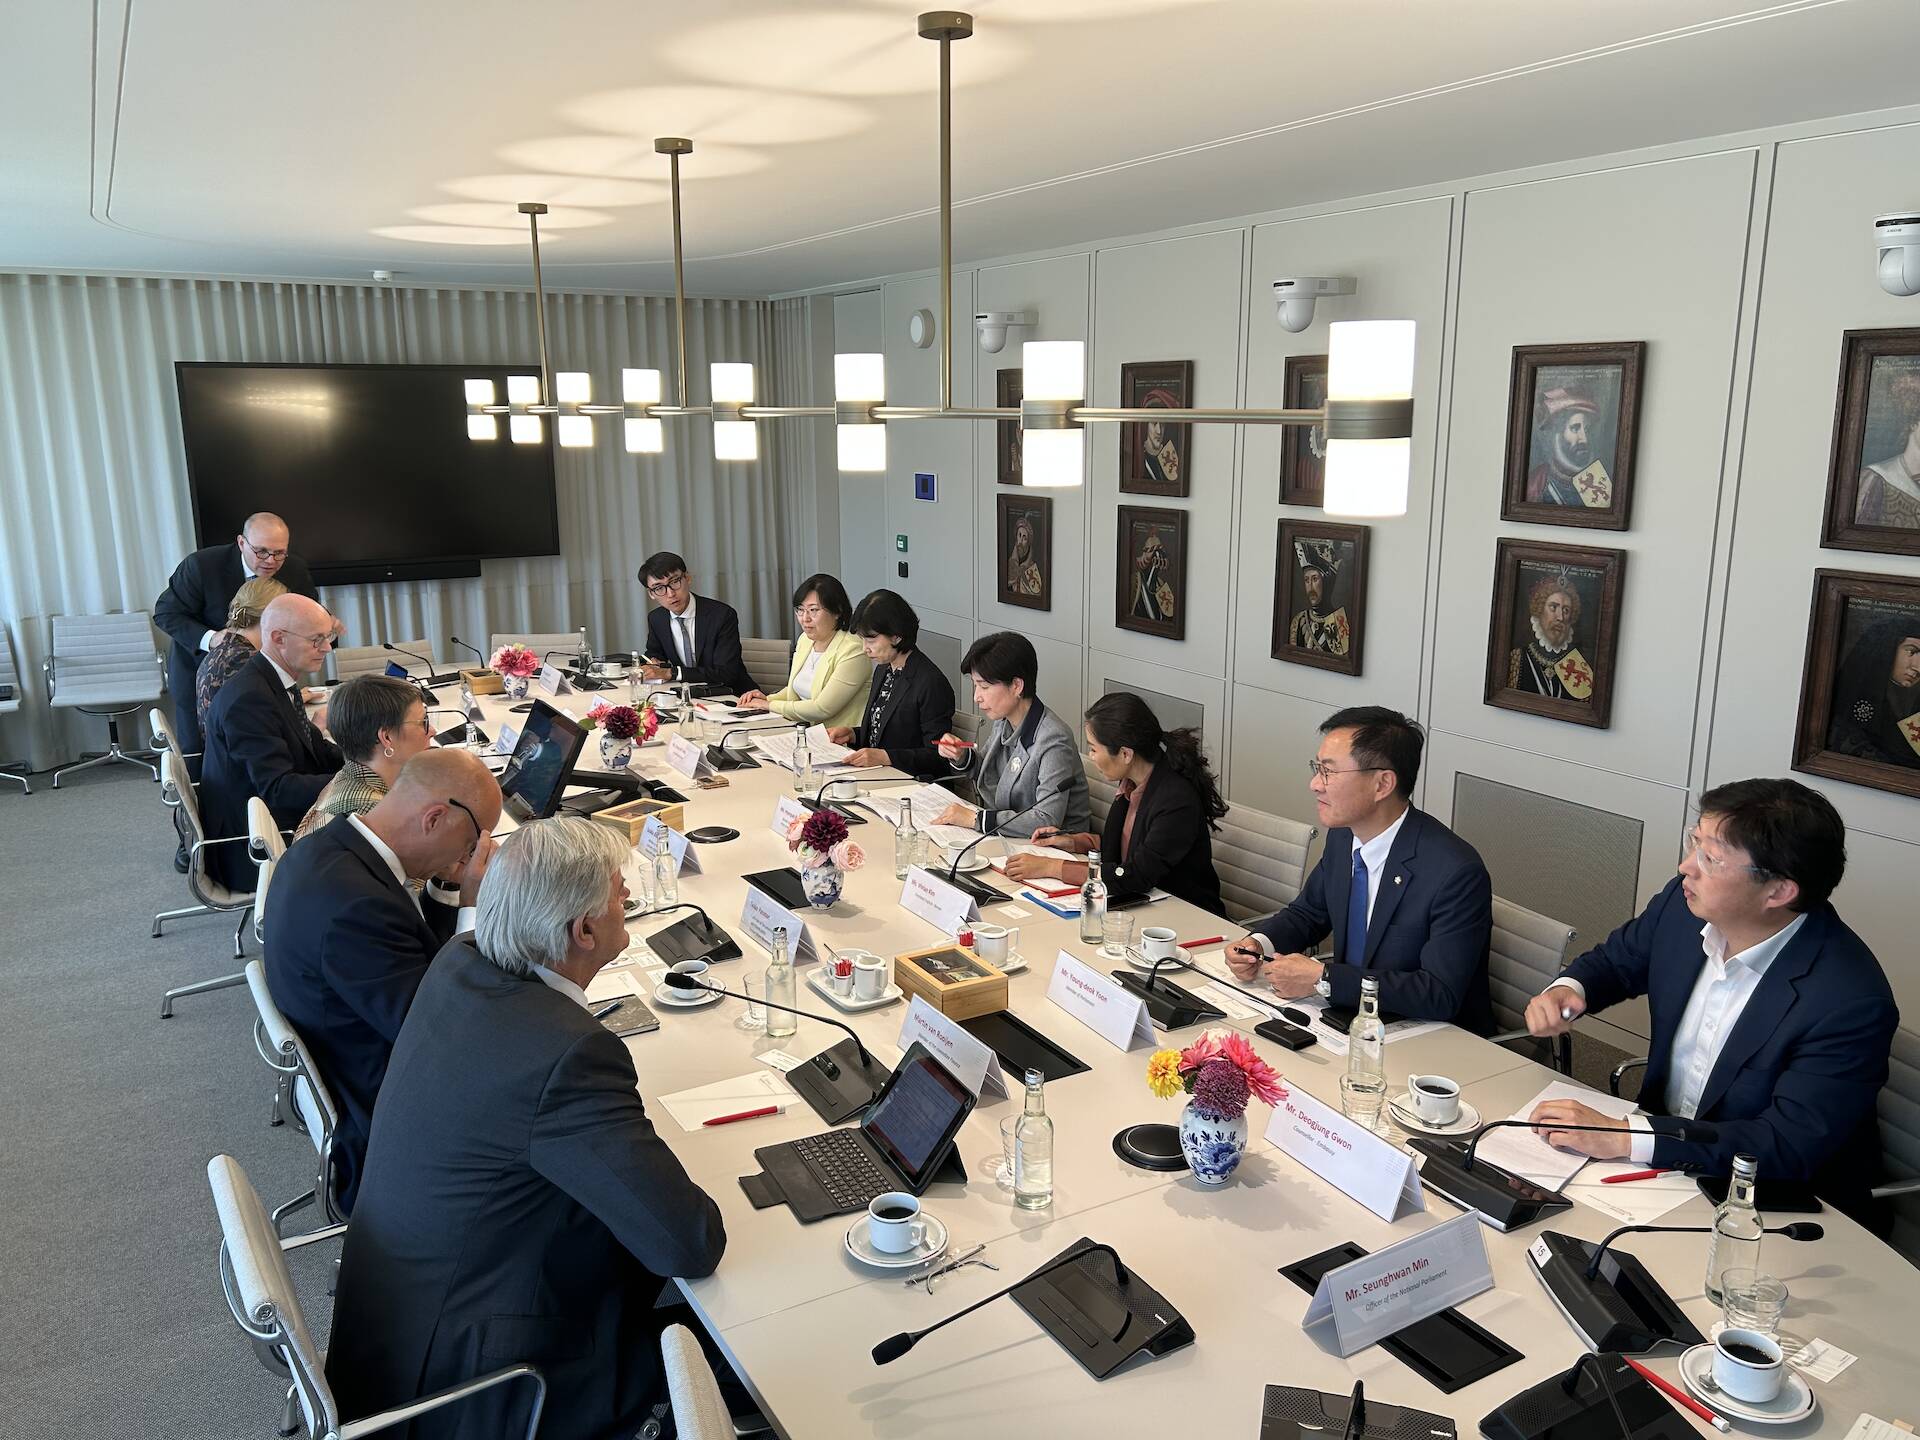 Gesprek tussen de delegatie uit Zuid-Korea en leden van de commissies voor Economische Zaken en Klimaat (EZK) en Financiën (FIN)